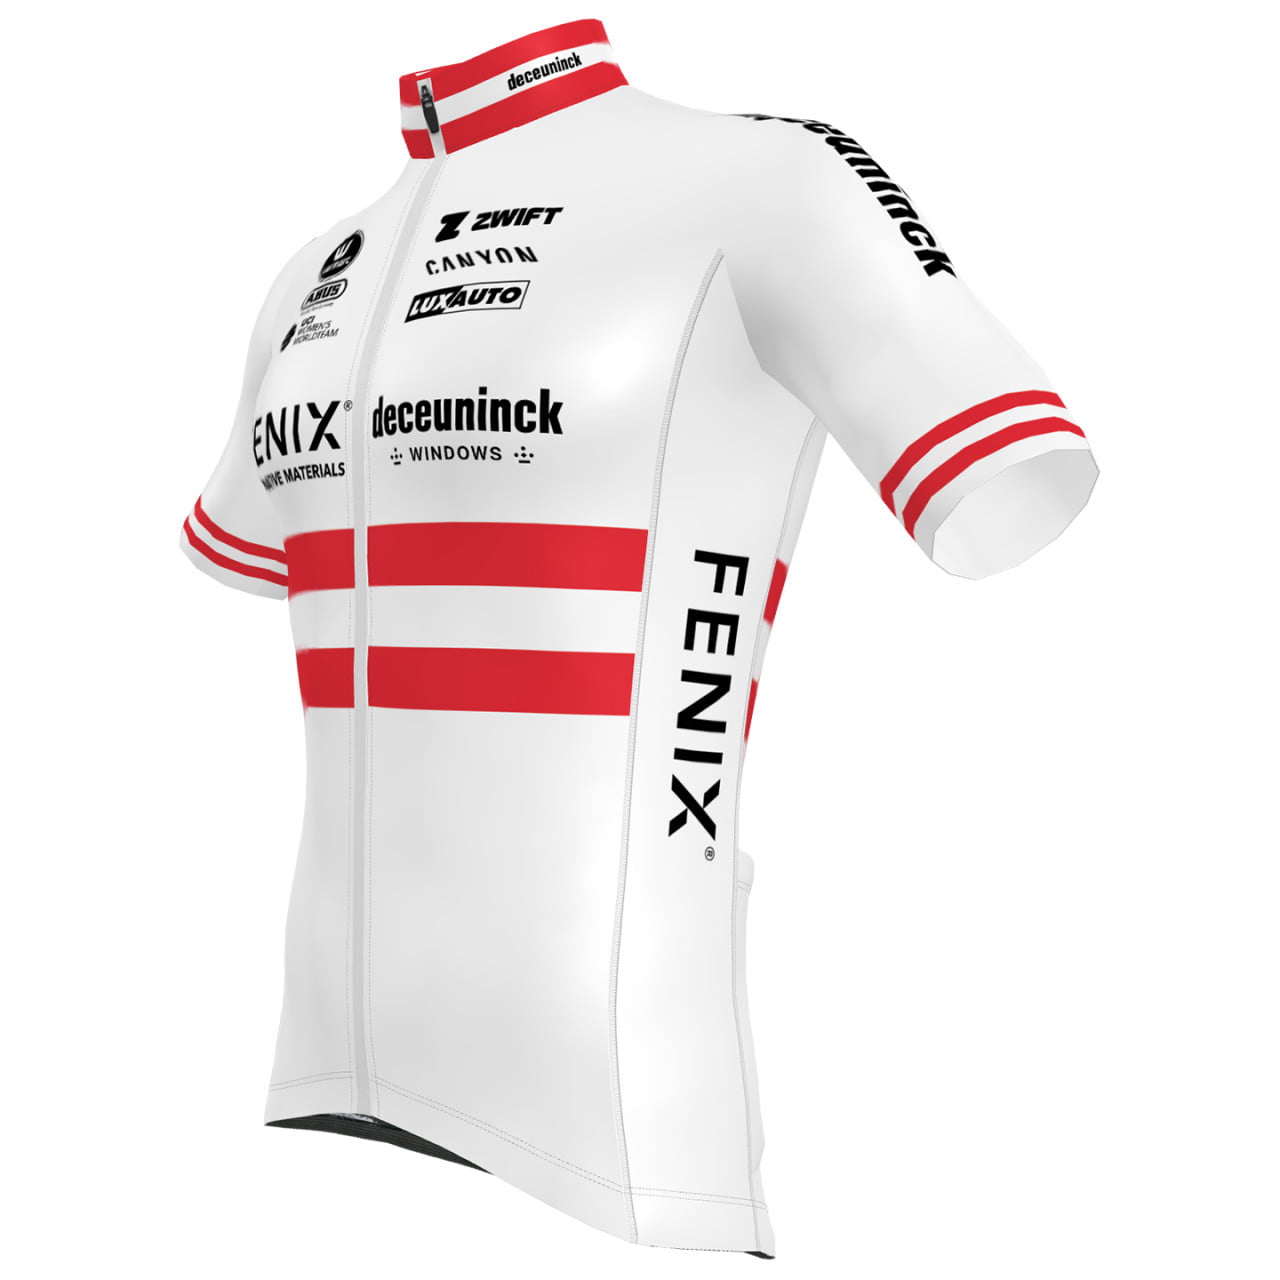 FENIX-DECEUNINCK Short Sleeve Jersey Austrian Champion 2024